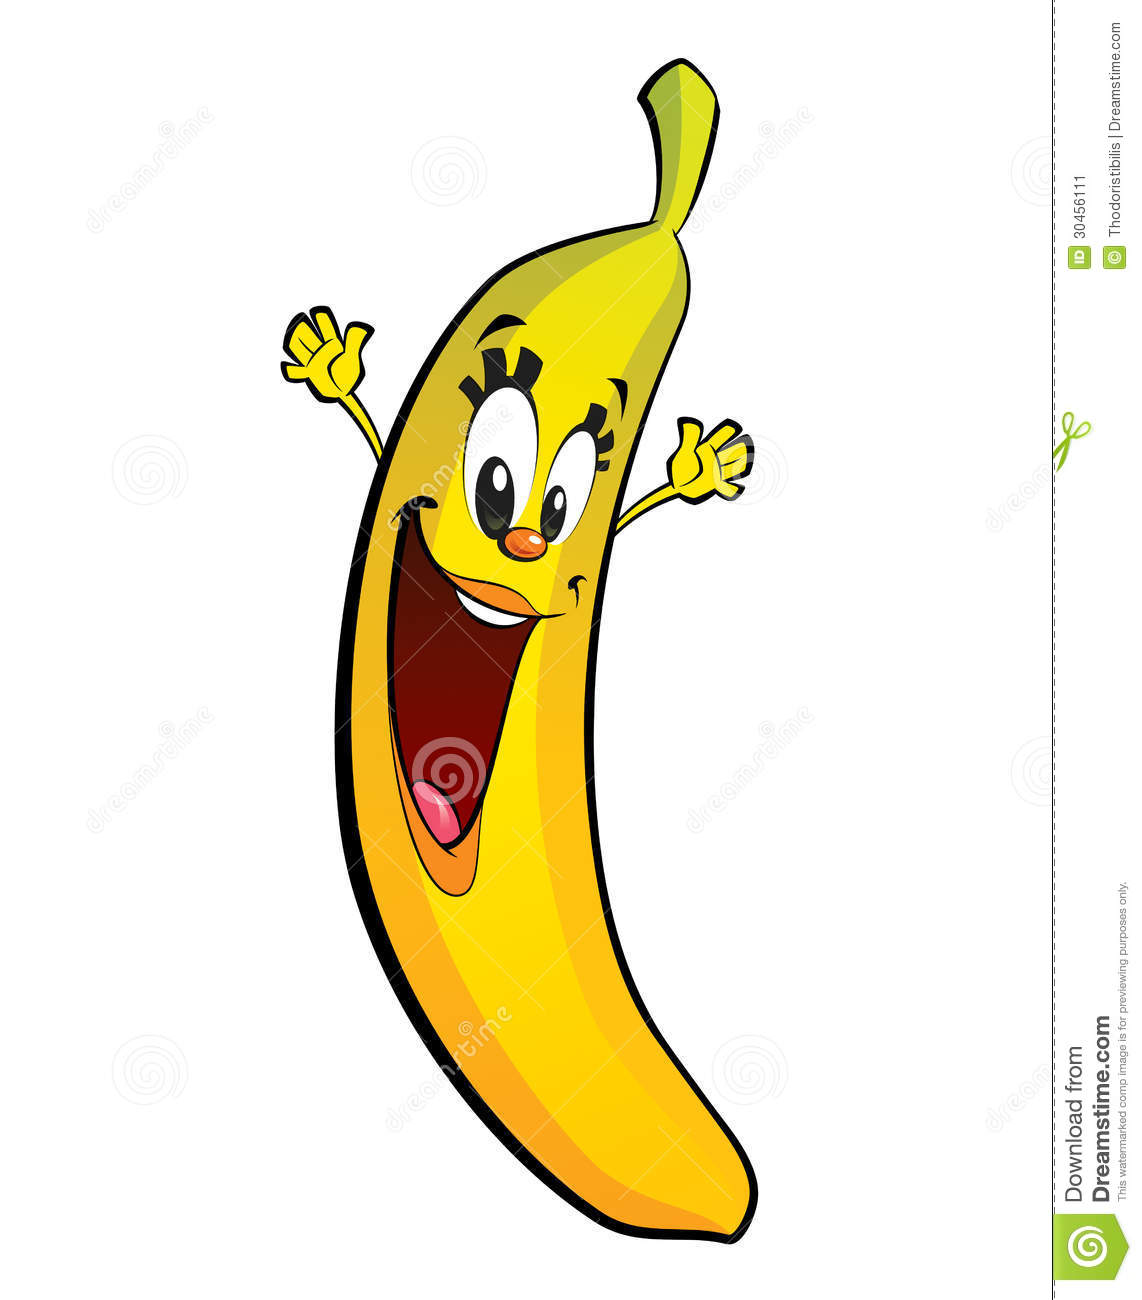 Banana clipart character.